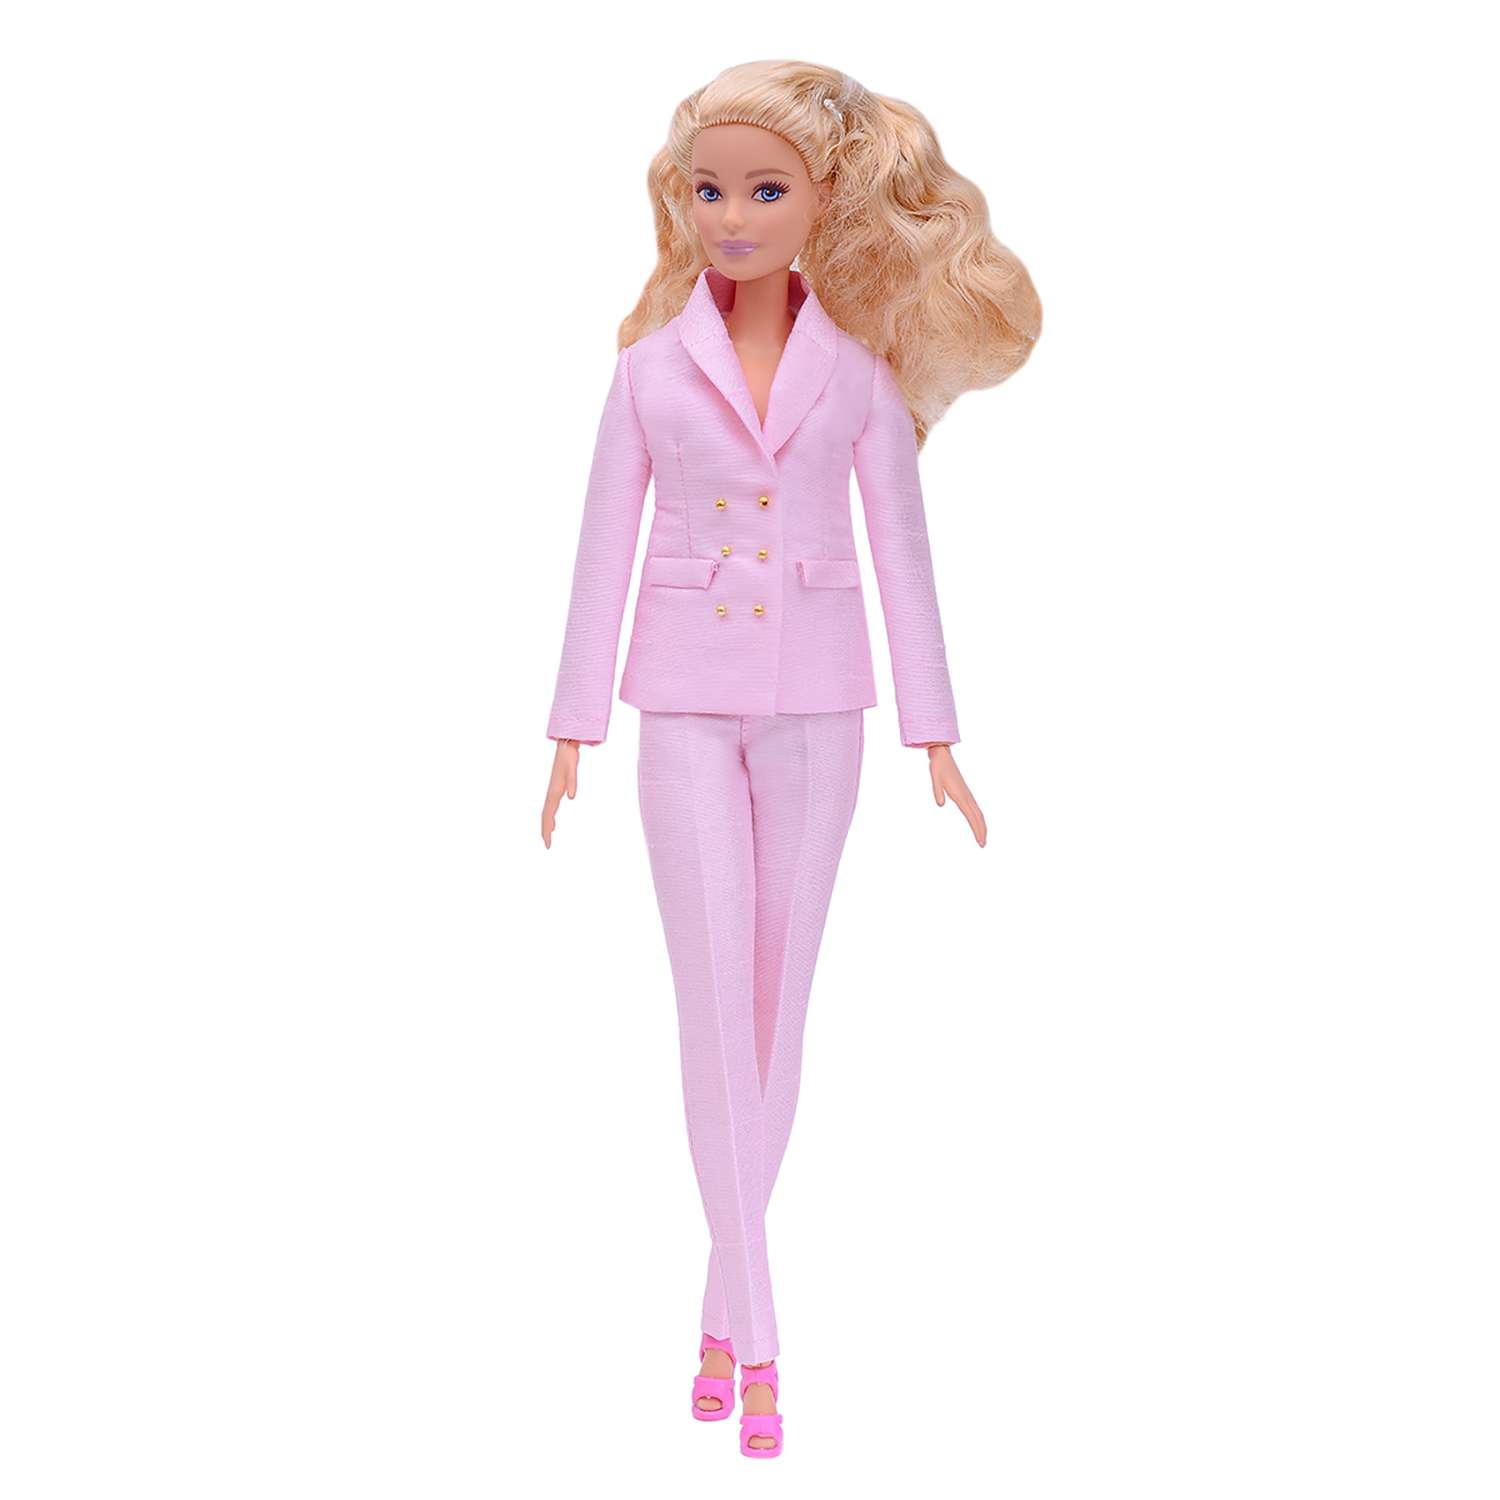 Шелковый брючный костюм Эленприв Светло-розовый для куклы 29 см типа Барби FA-011-04 - фото 6